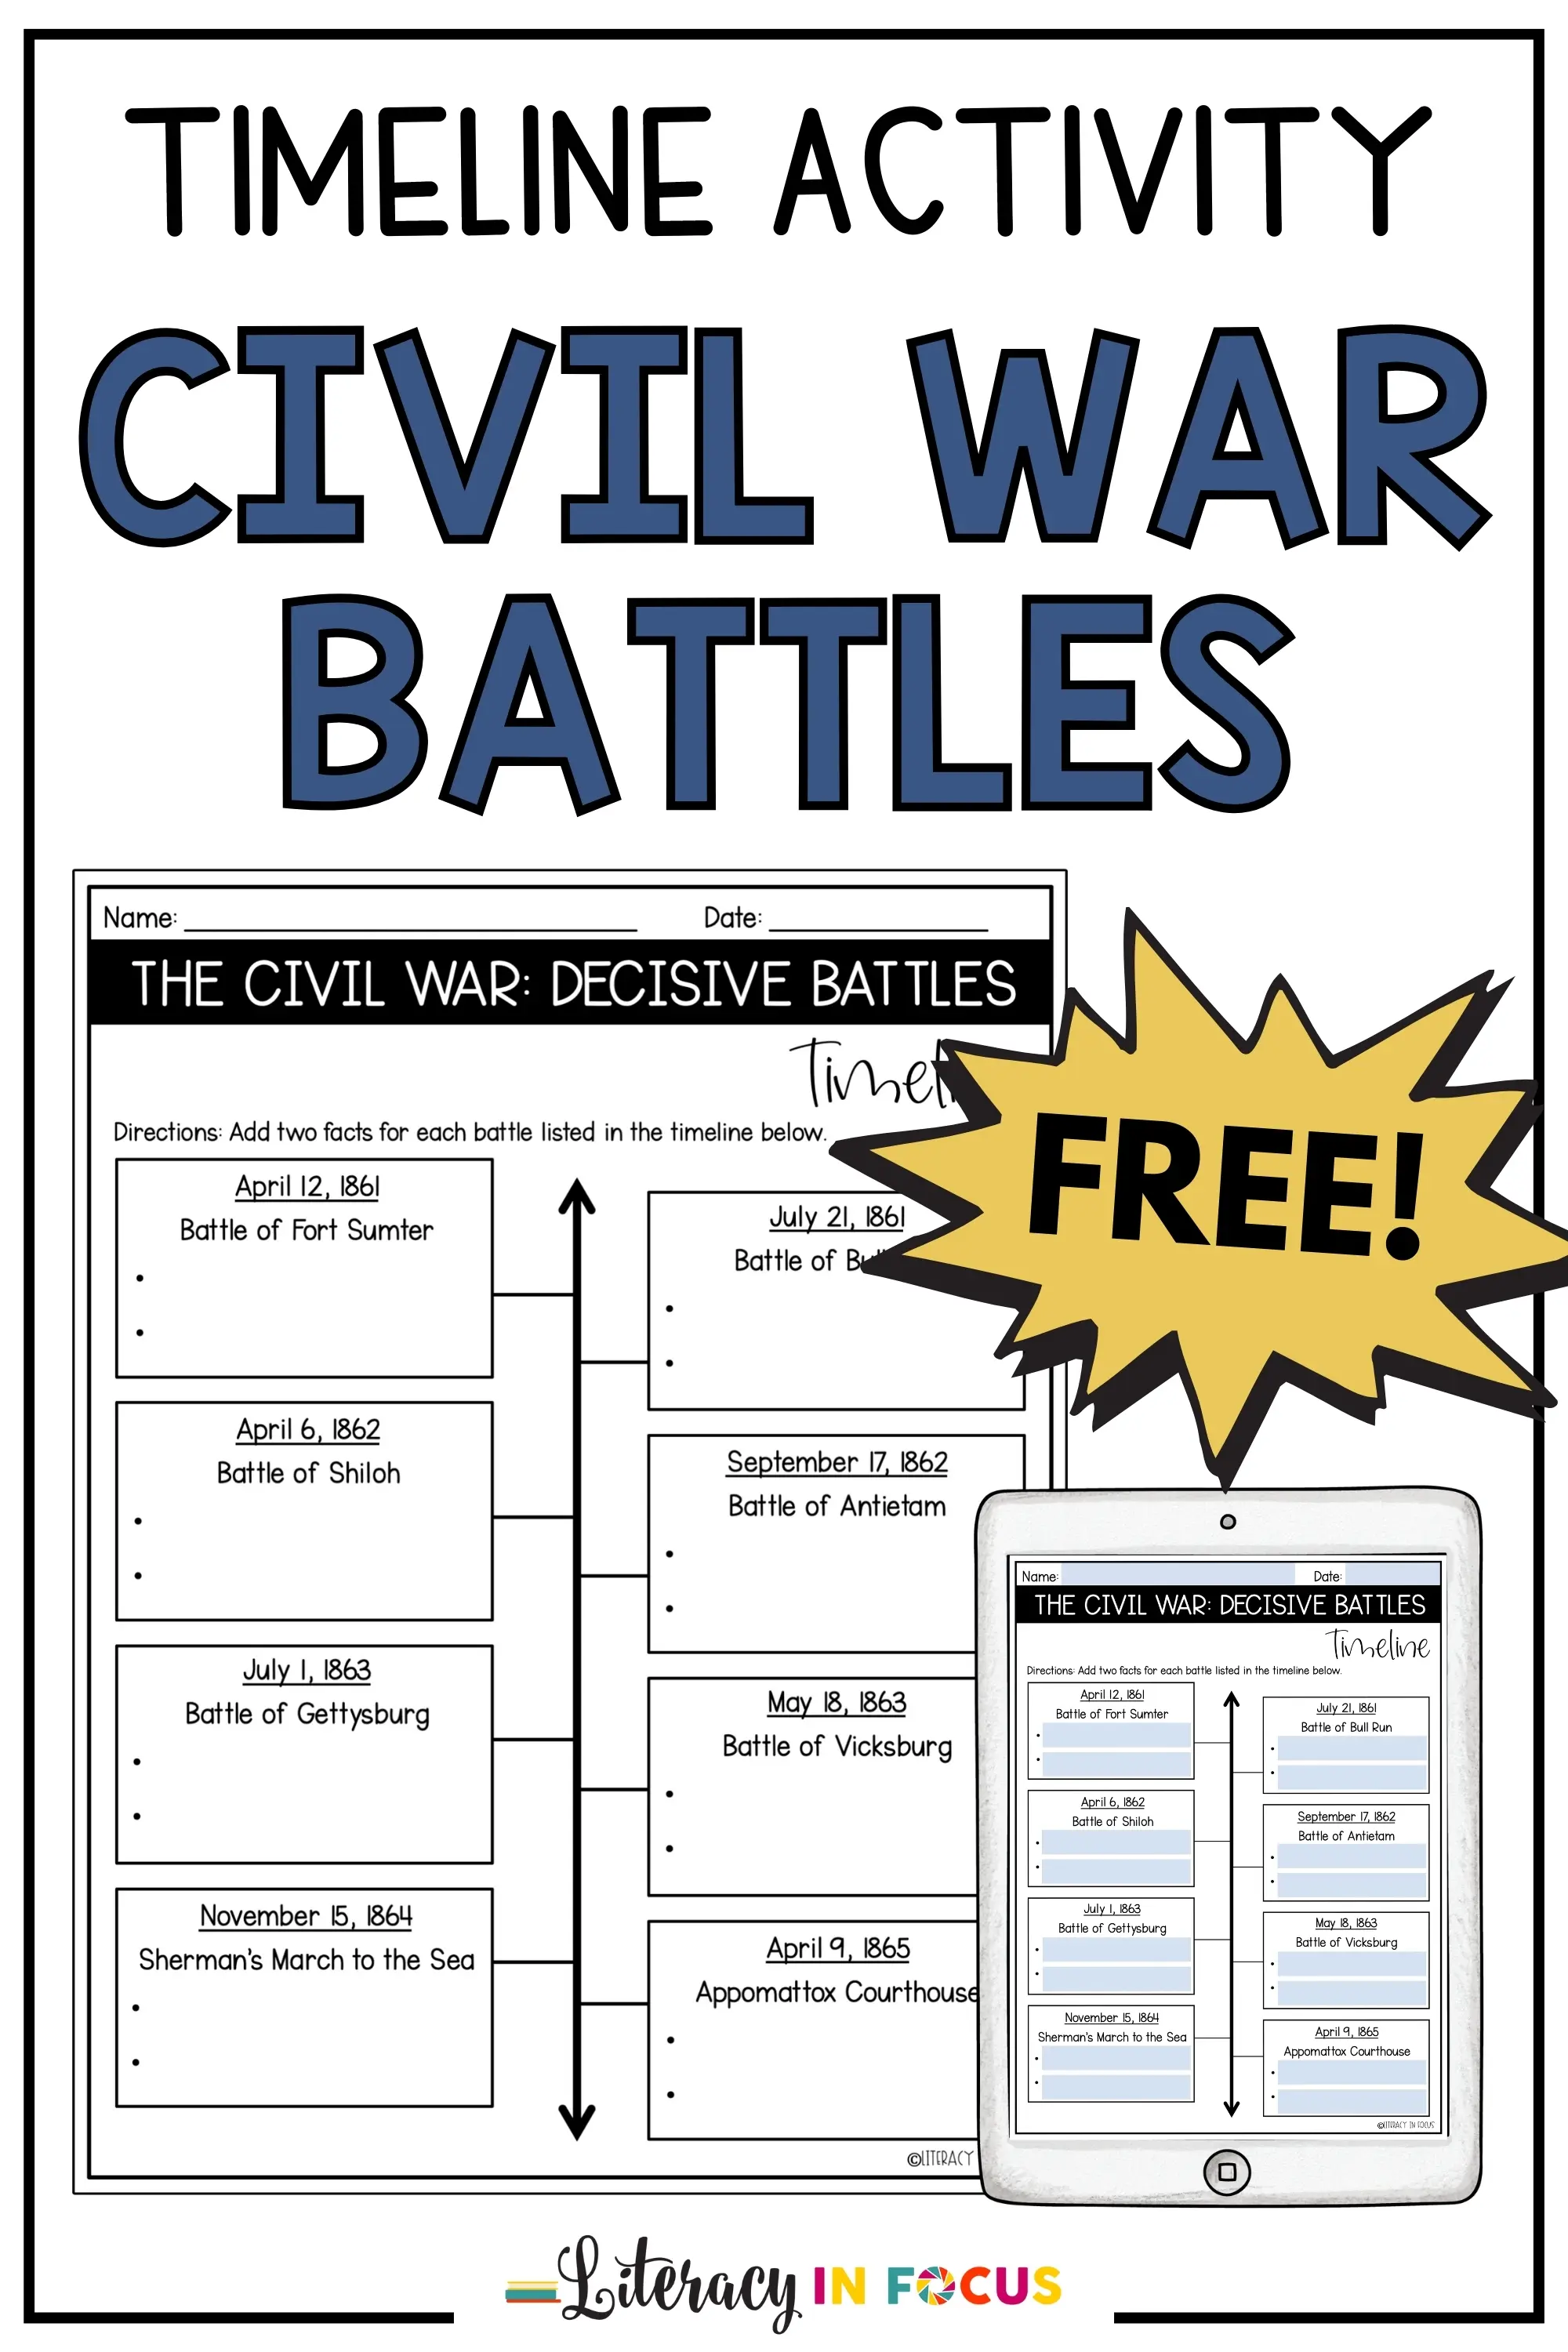 Civil War Battles Timeline Activity | Free Worksheet